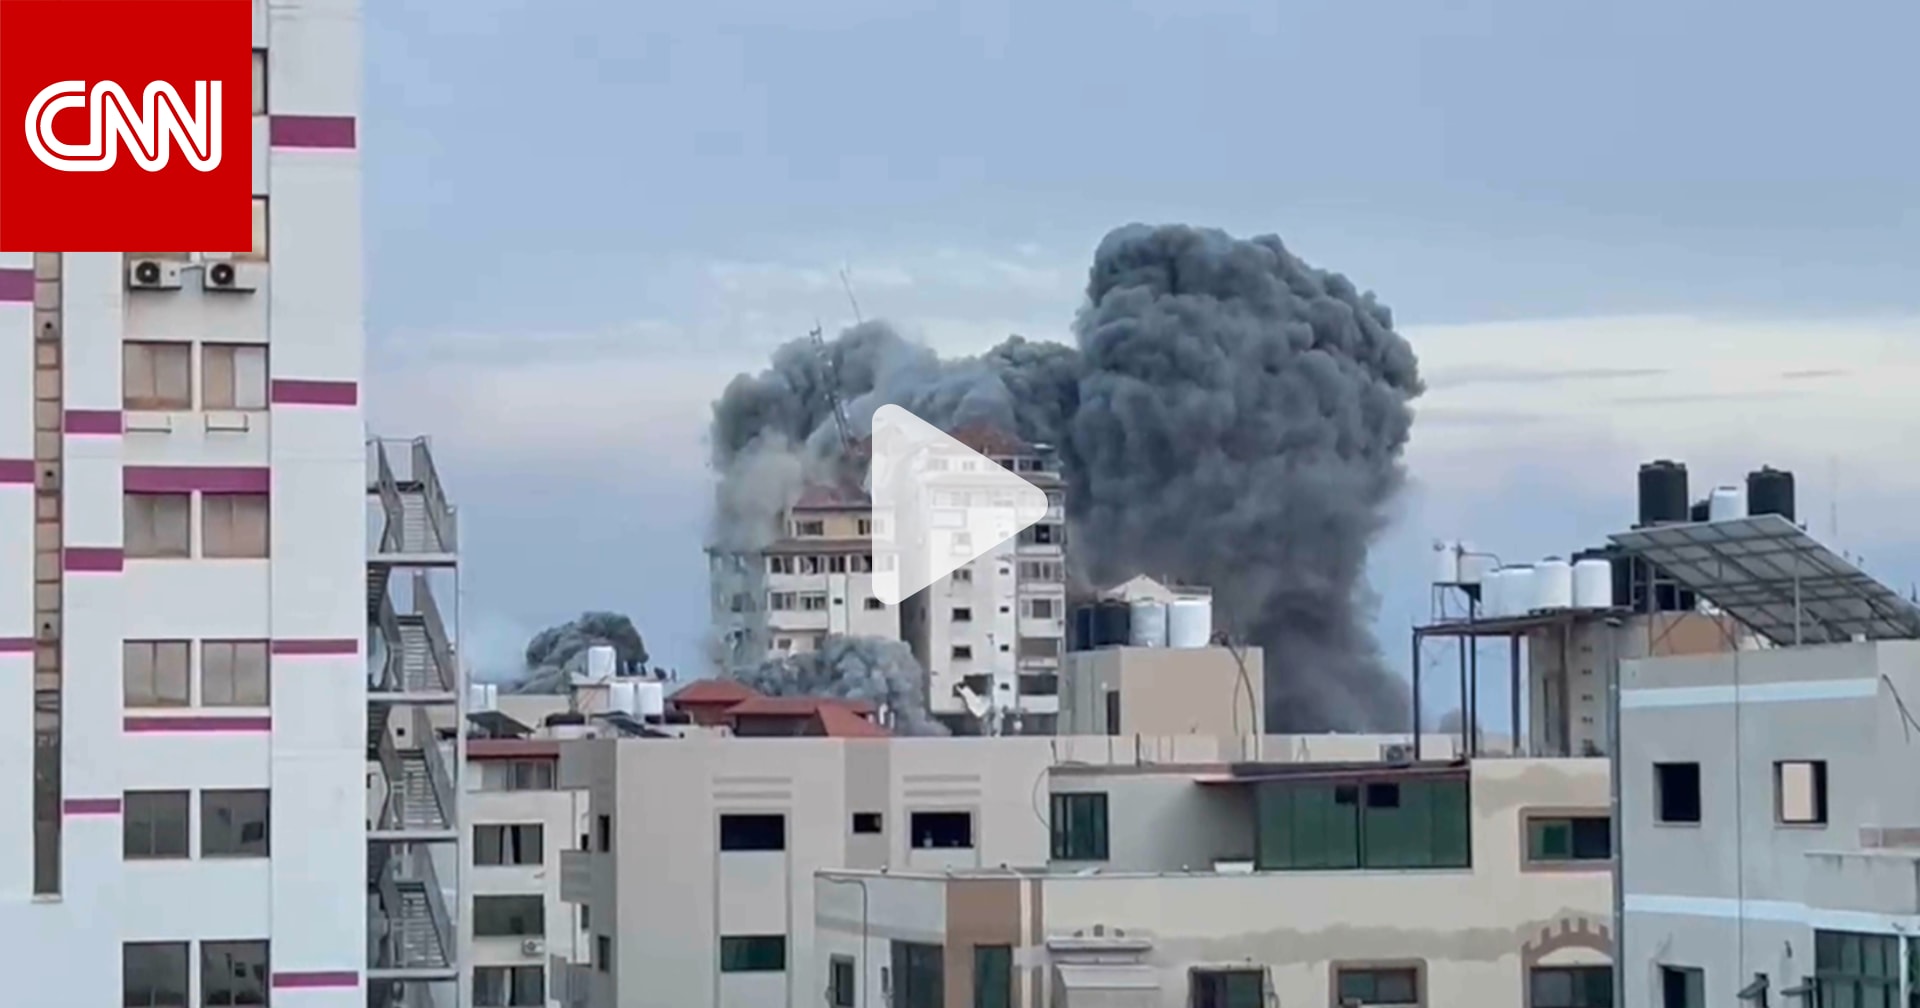 شاهد لحظة انهيار برجين شاهقين أحدهما "برج فلسطين" بعد قصف على غزة